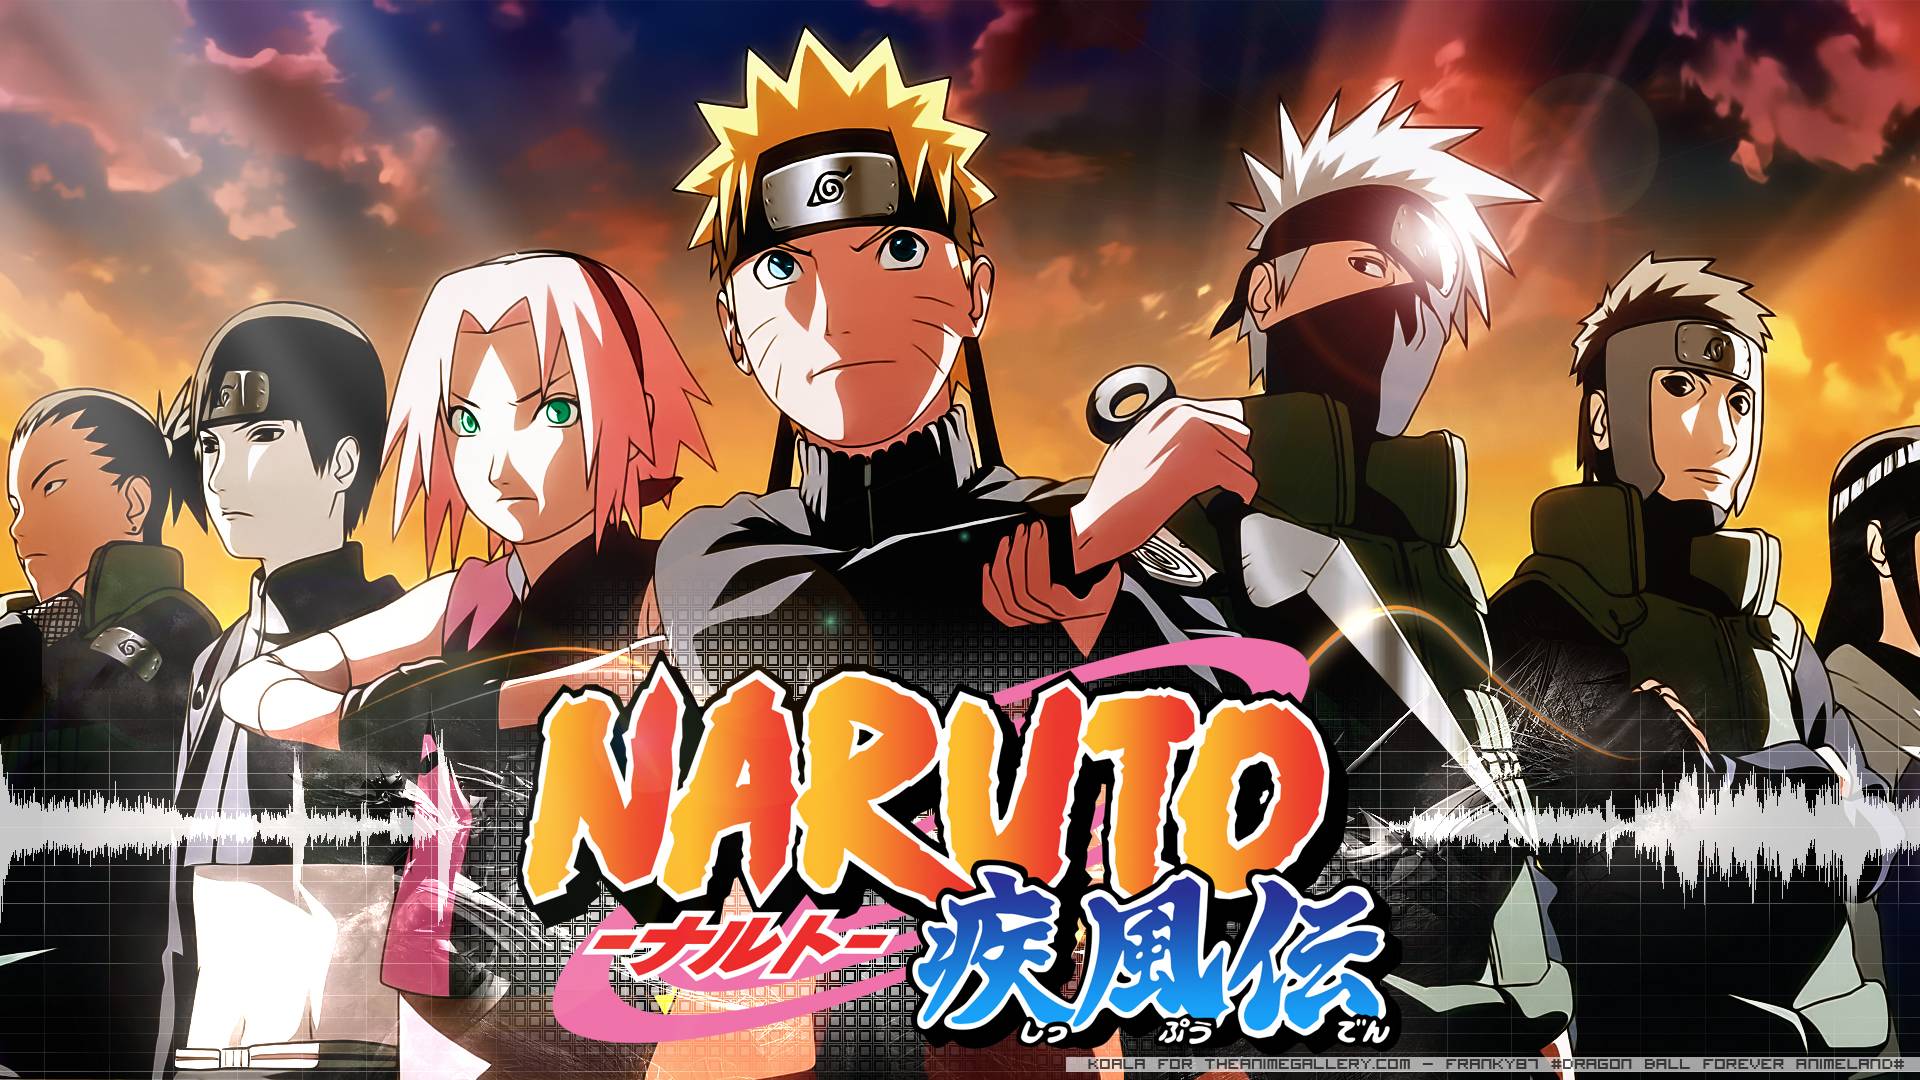 Anime Naruto Shippuden Wallpaper Free Anime Naruto Shippuden Background